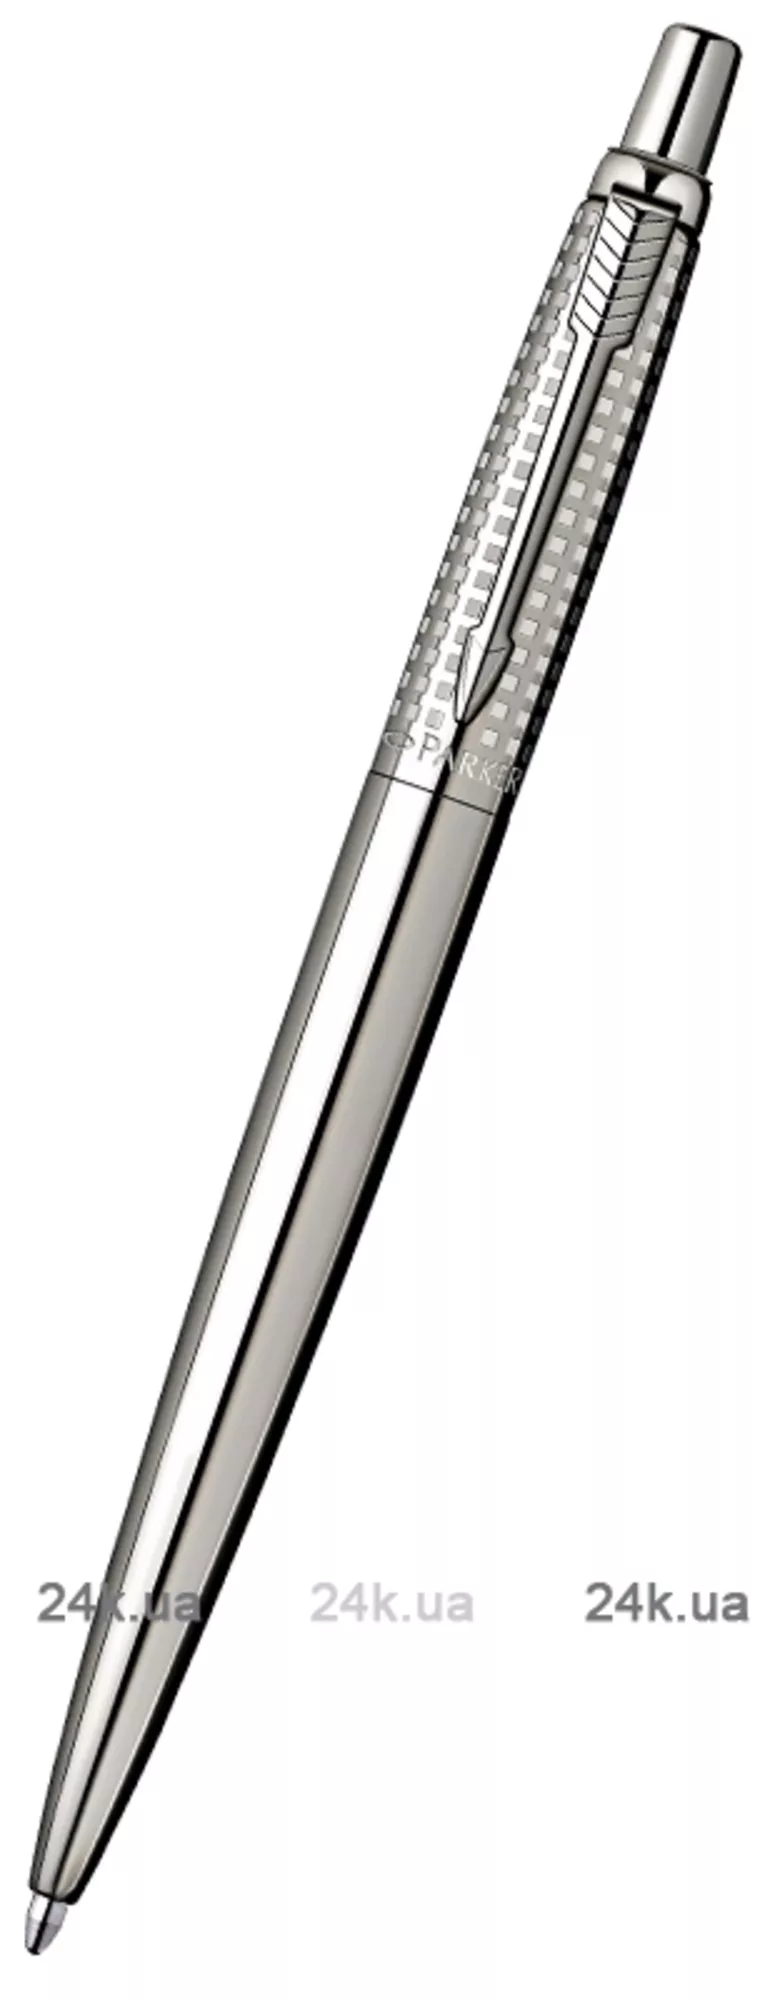 Ручка Parker Jotter Premium Shiny SS Chiselled BP 15 332S